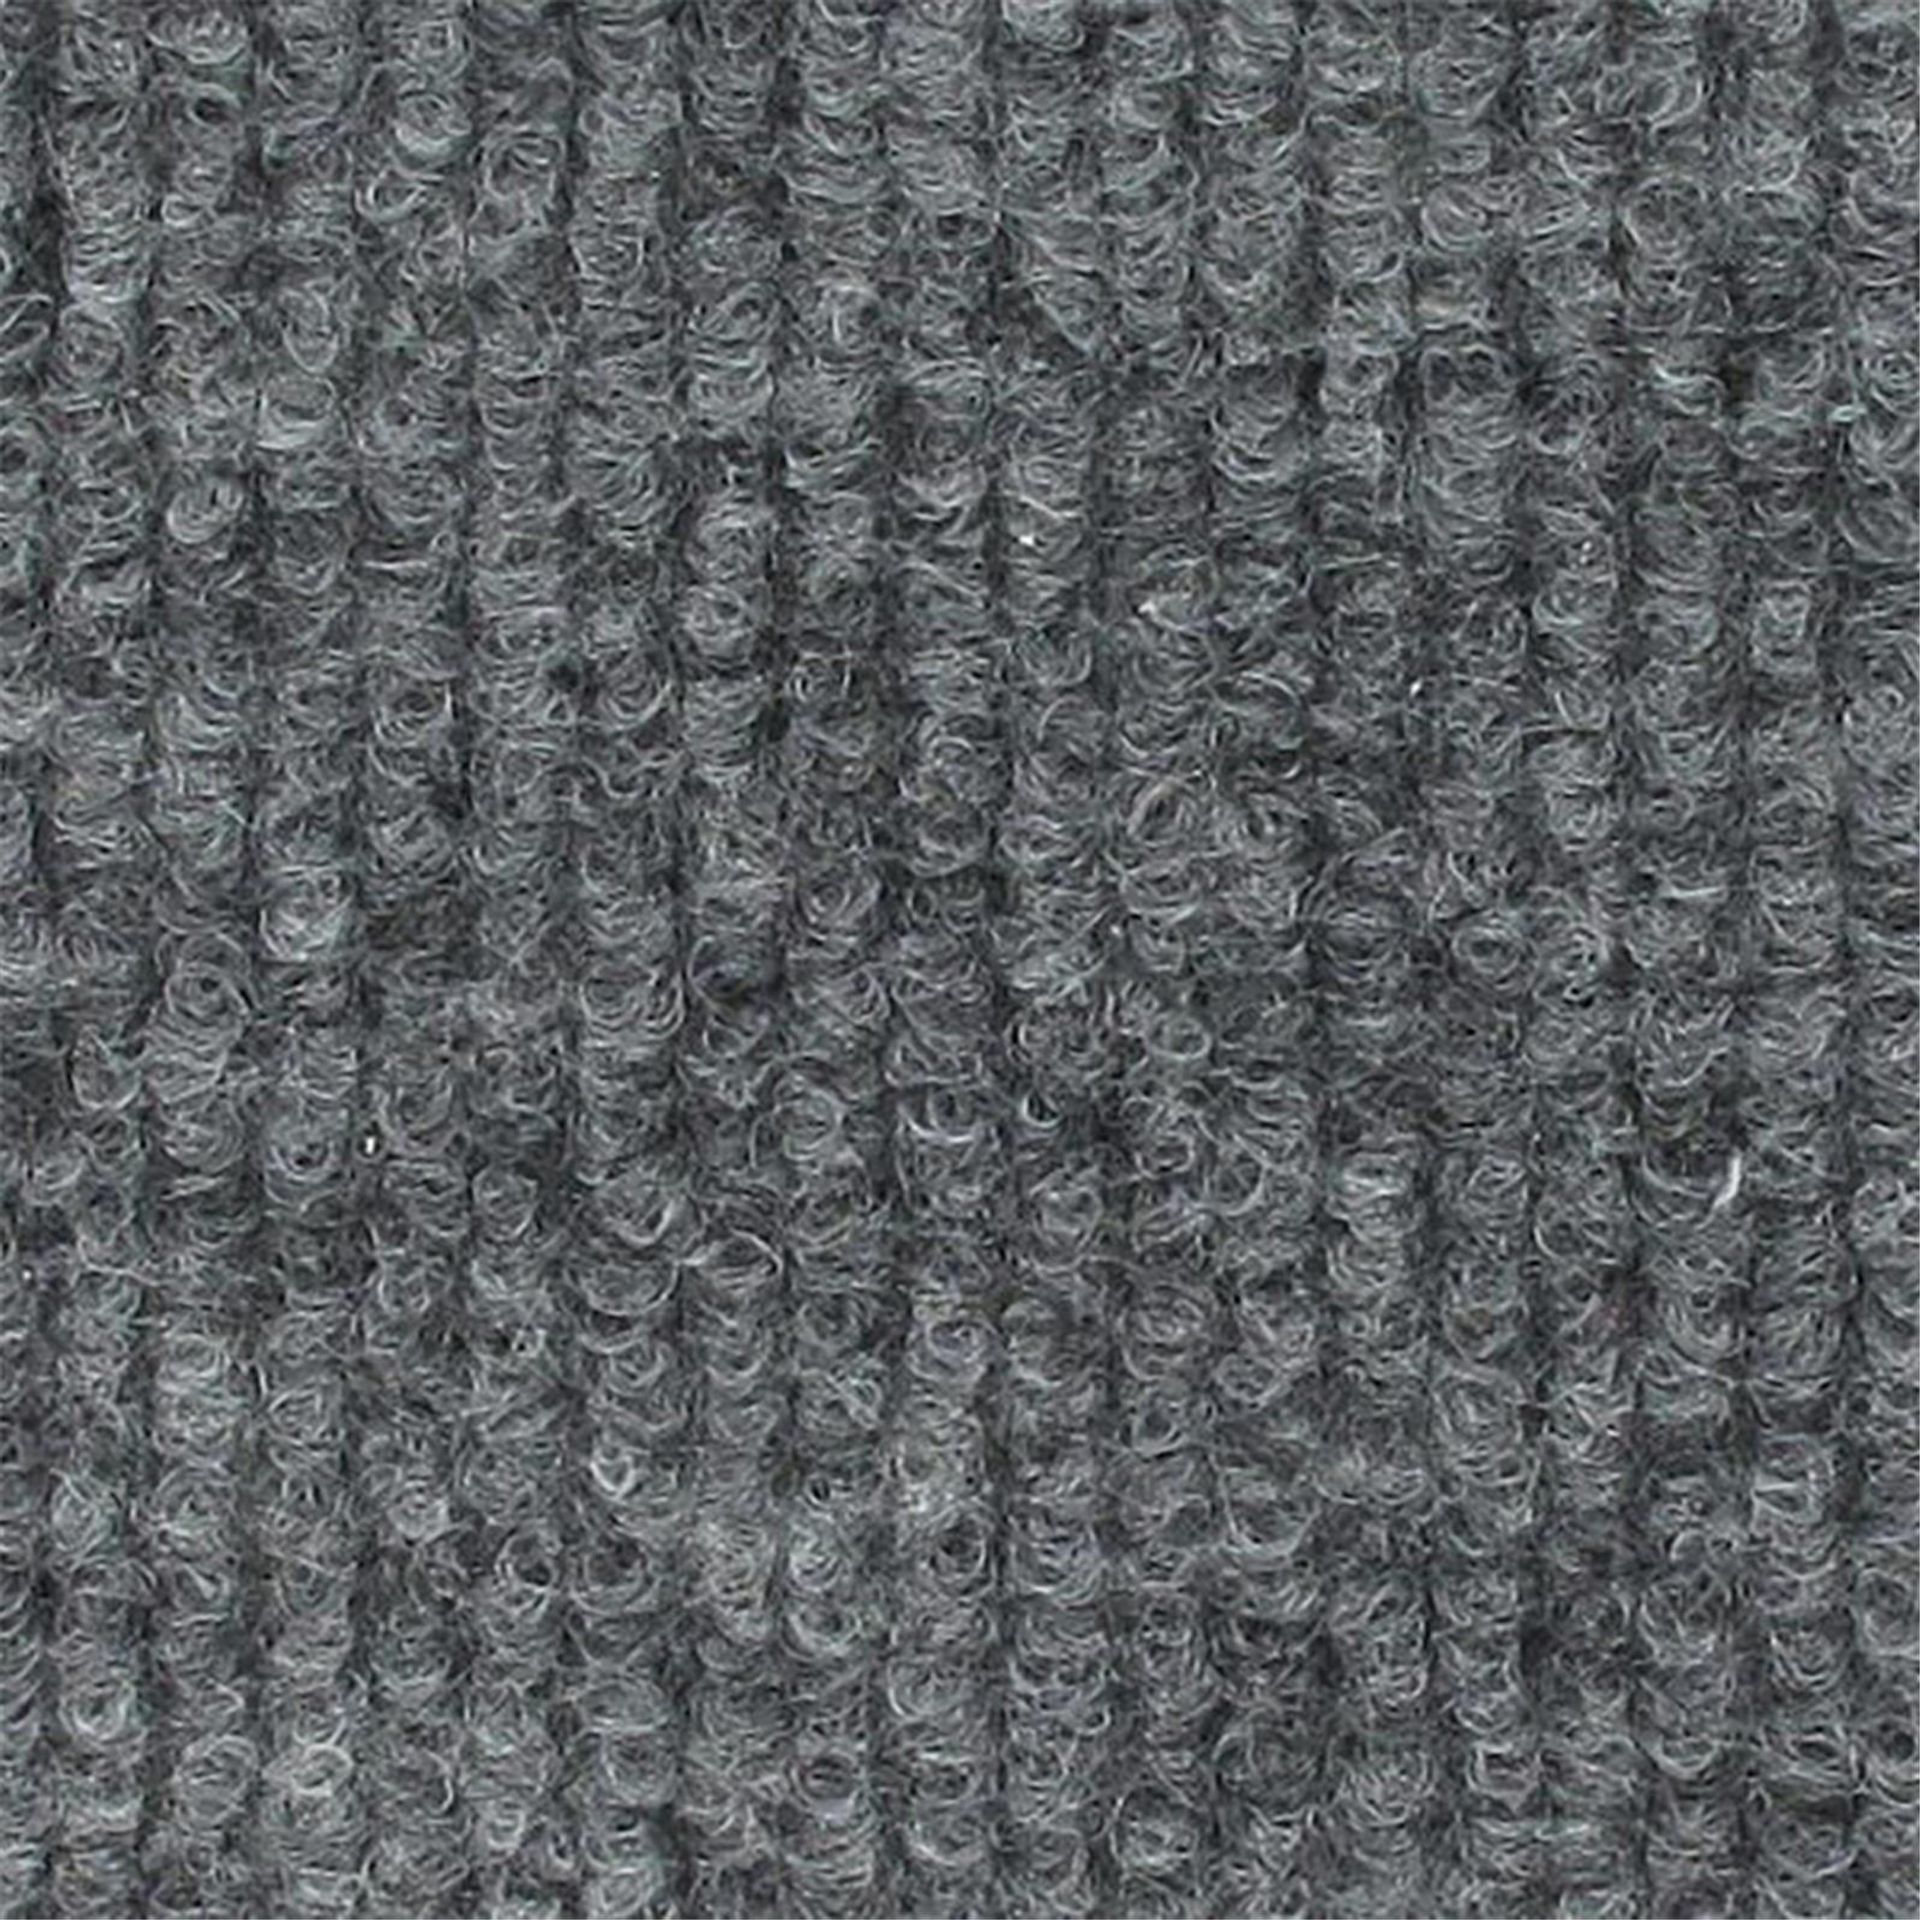 Messeboden Rips-Nadelvlies EXPOLINE Grey 0905 100qm ohne Schutzfolie - Rollenbreite 200 cm